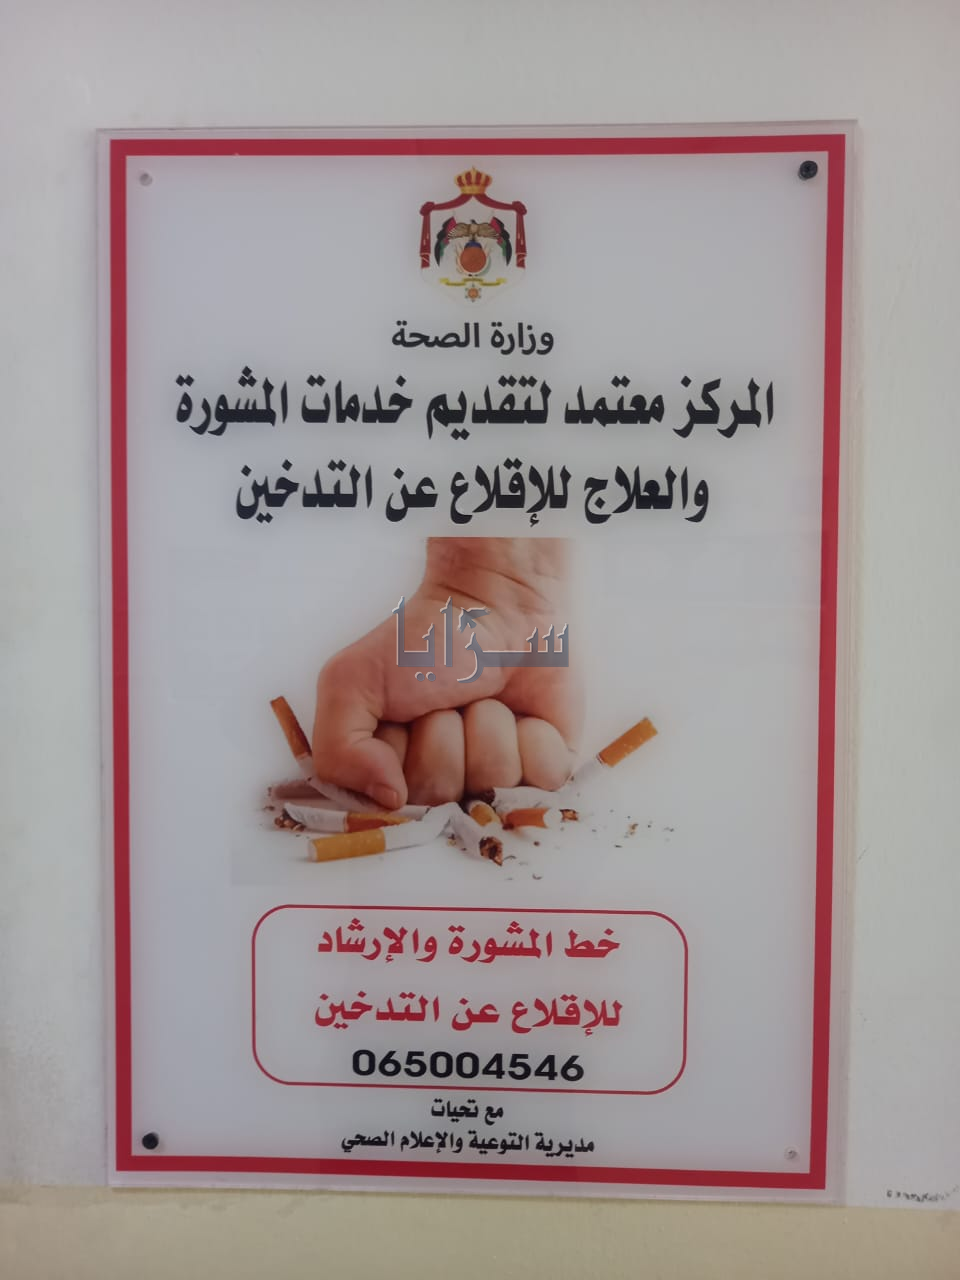 أكثر من 70 شخص اقلعوا عن التدخين في عجلون ..  وهذه قصة مواطن أعاد زوجته واشترى منزل نتيجة بُعده عن السجائر